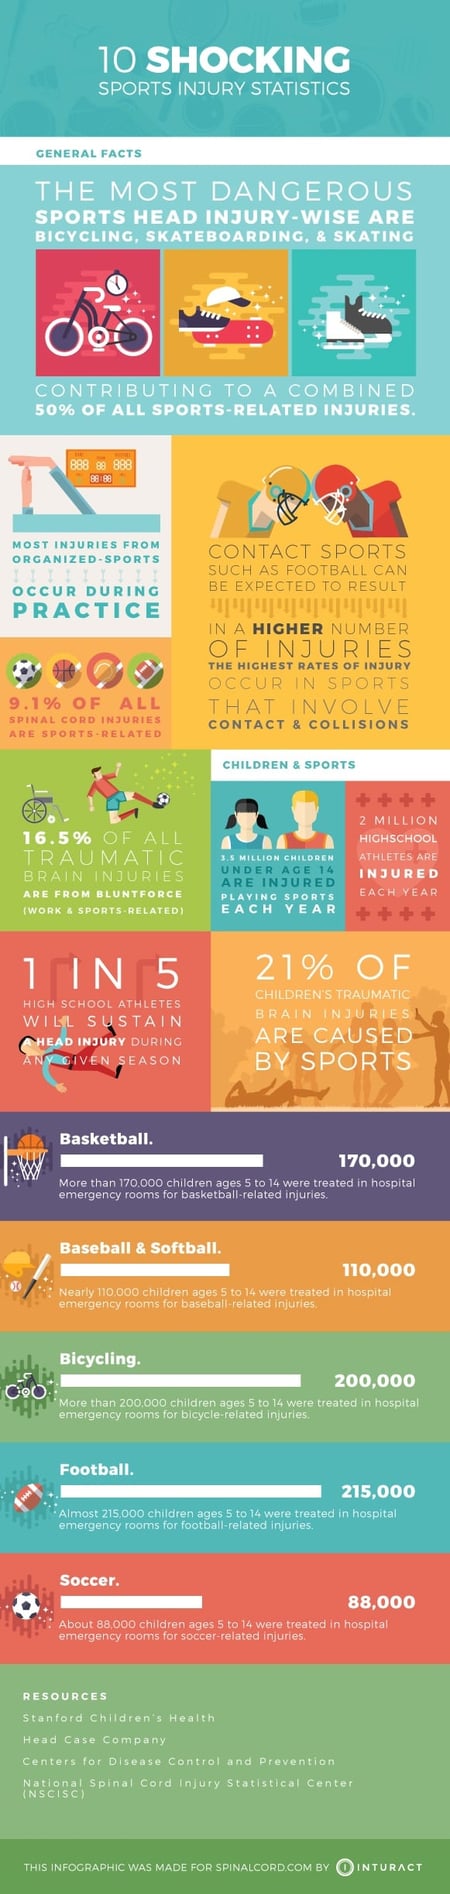 10 Shocking Sports Injury Statistics